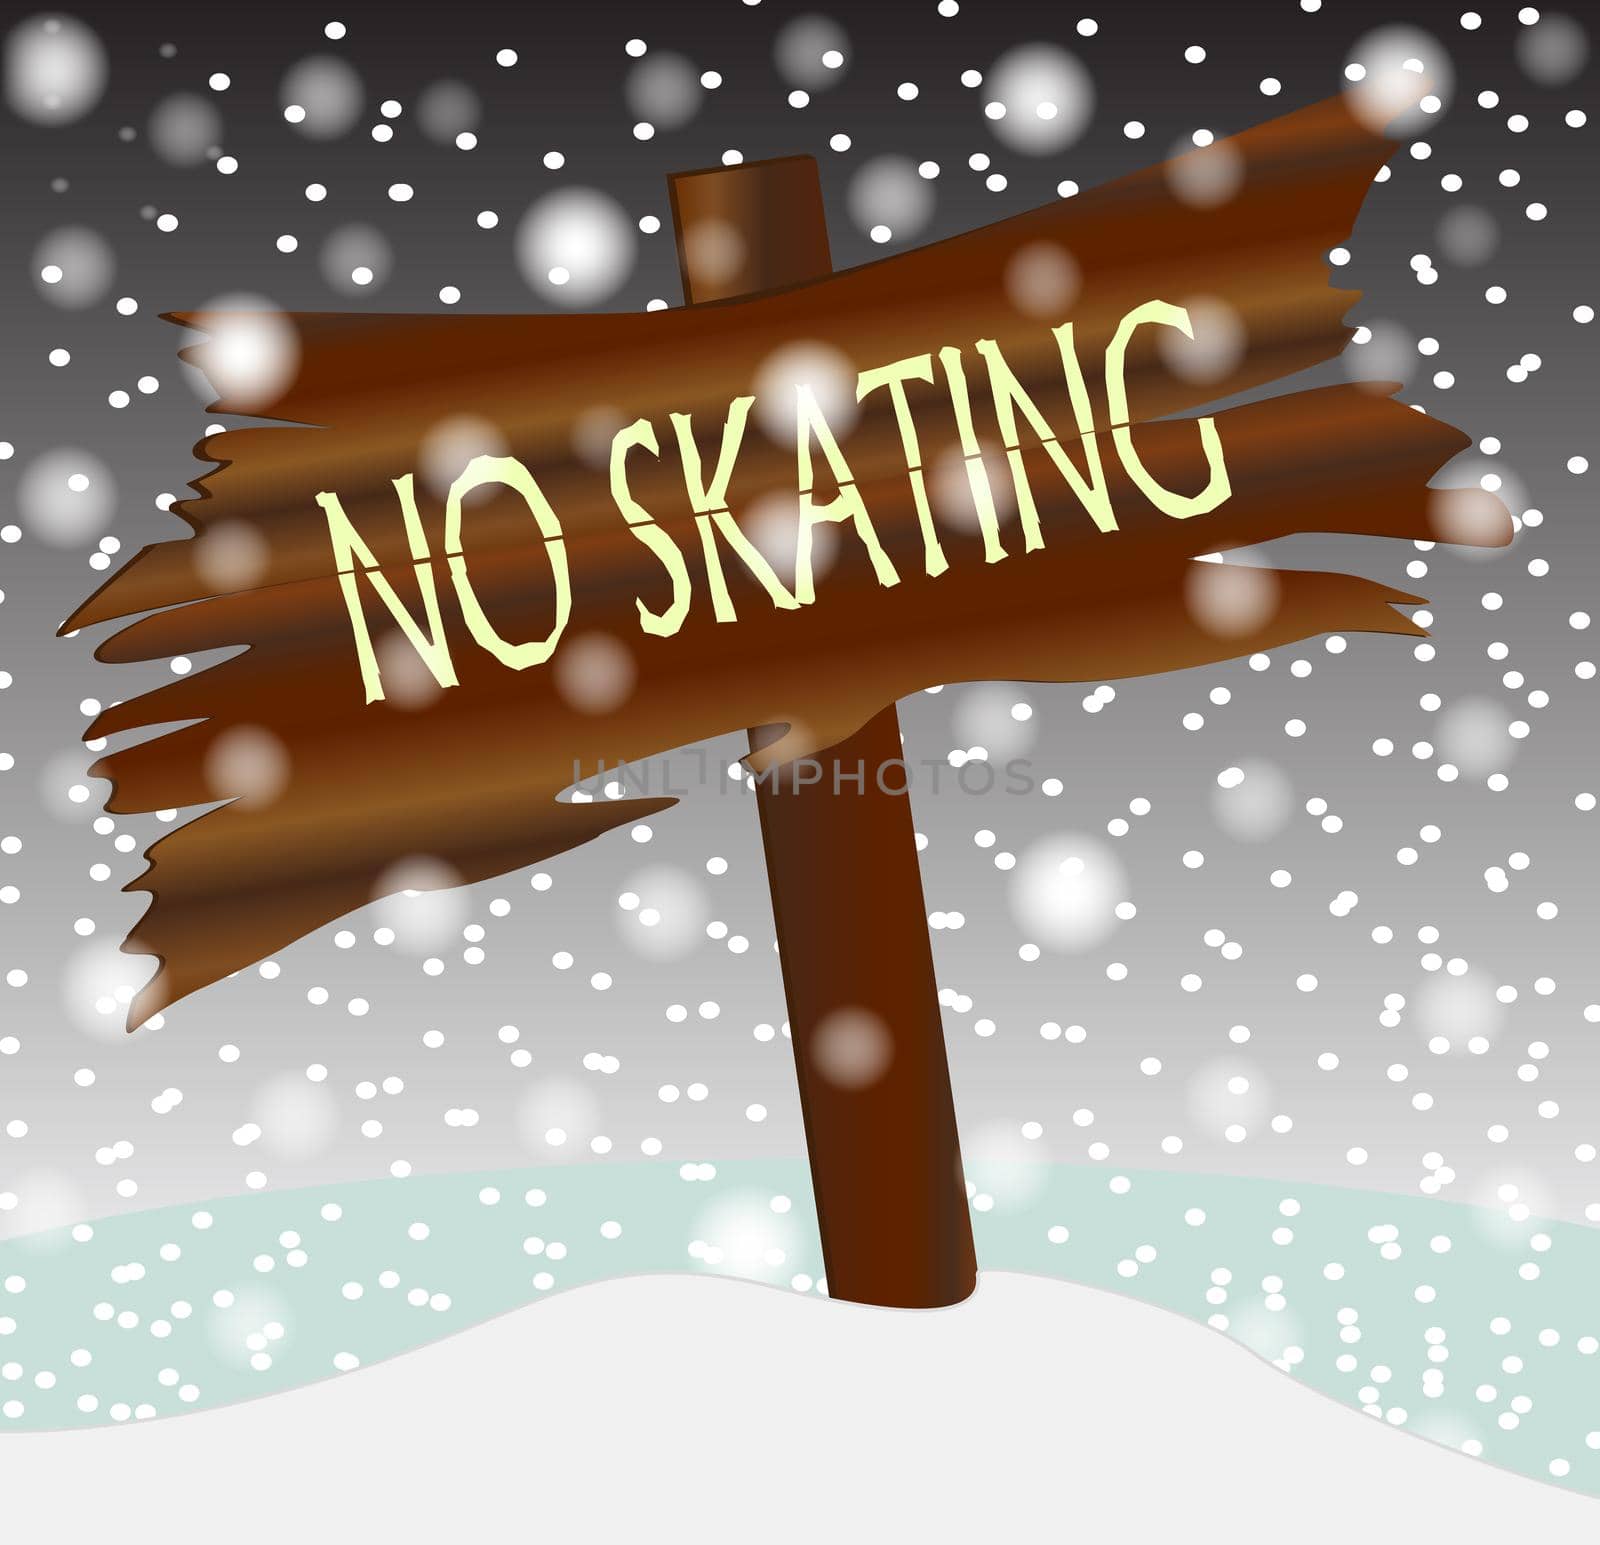 Winter No Skating Wooden Board by Bigalbaloo